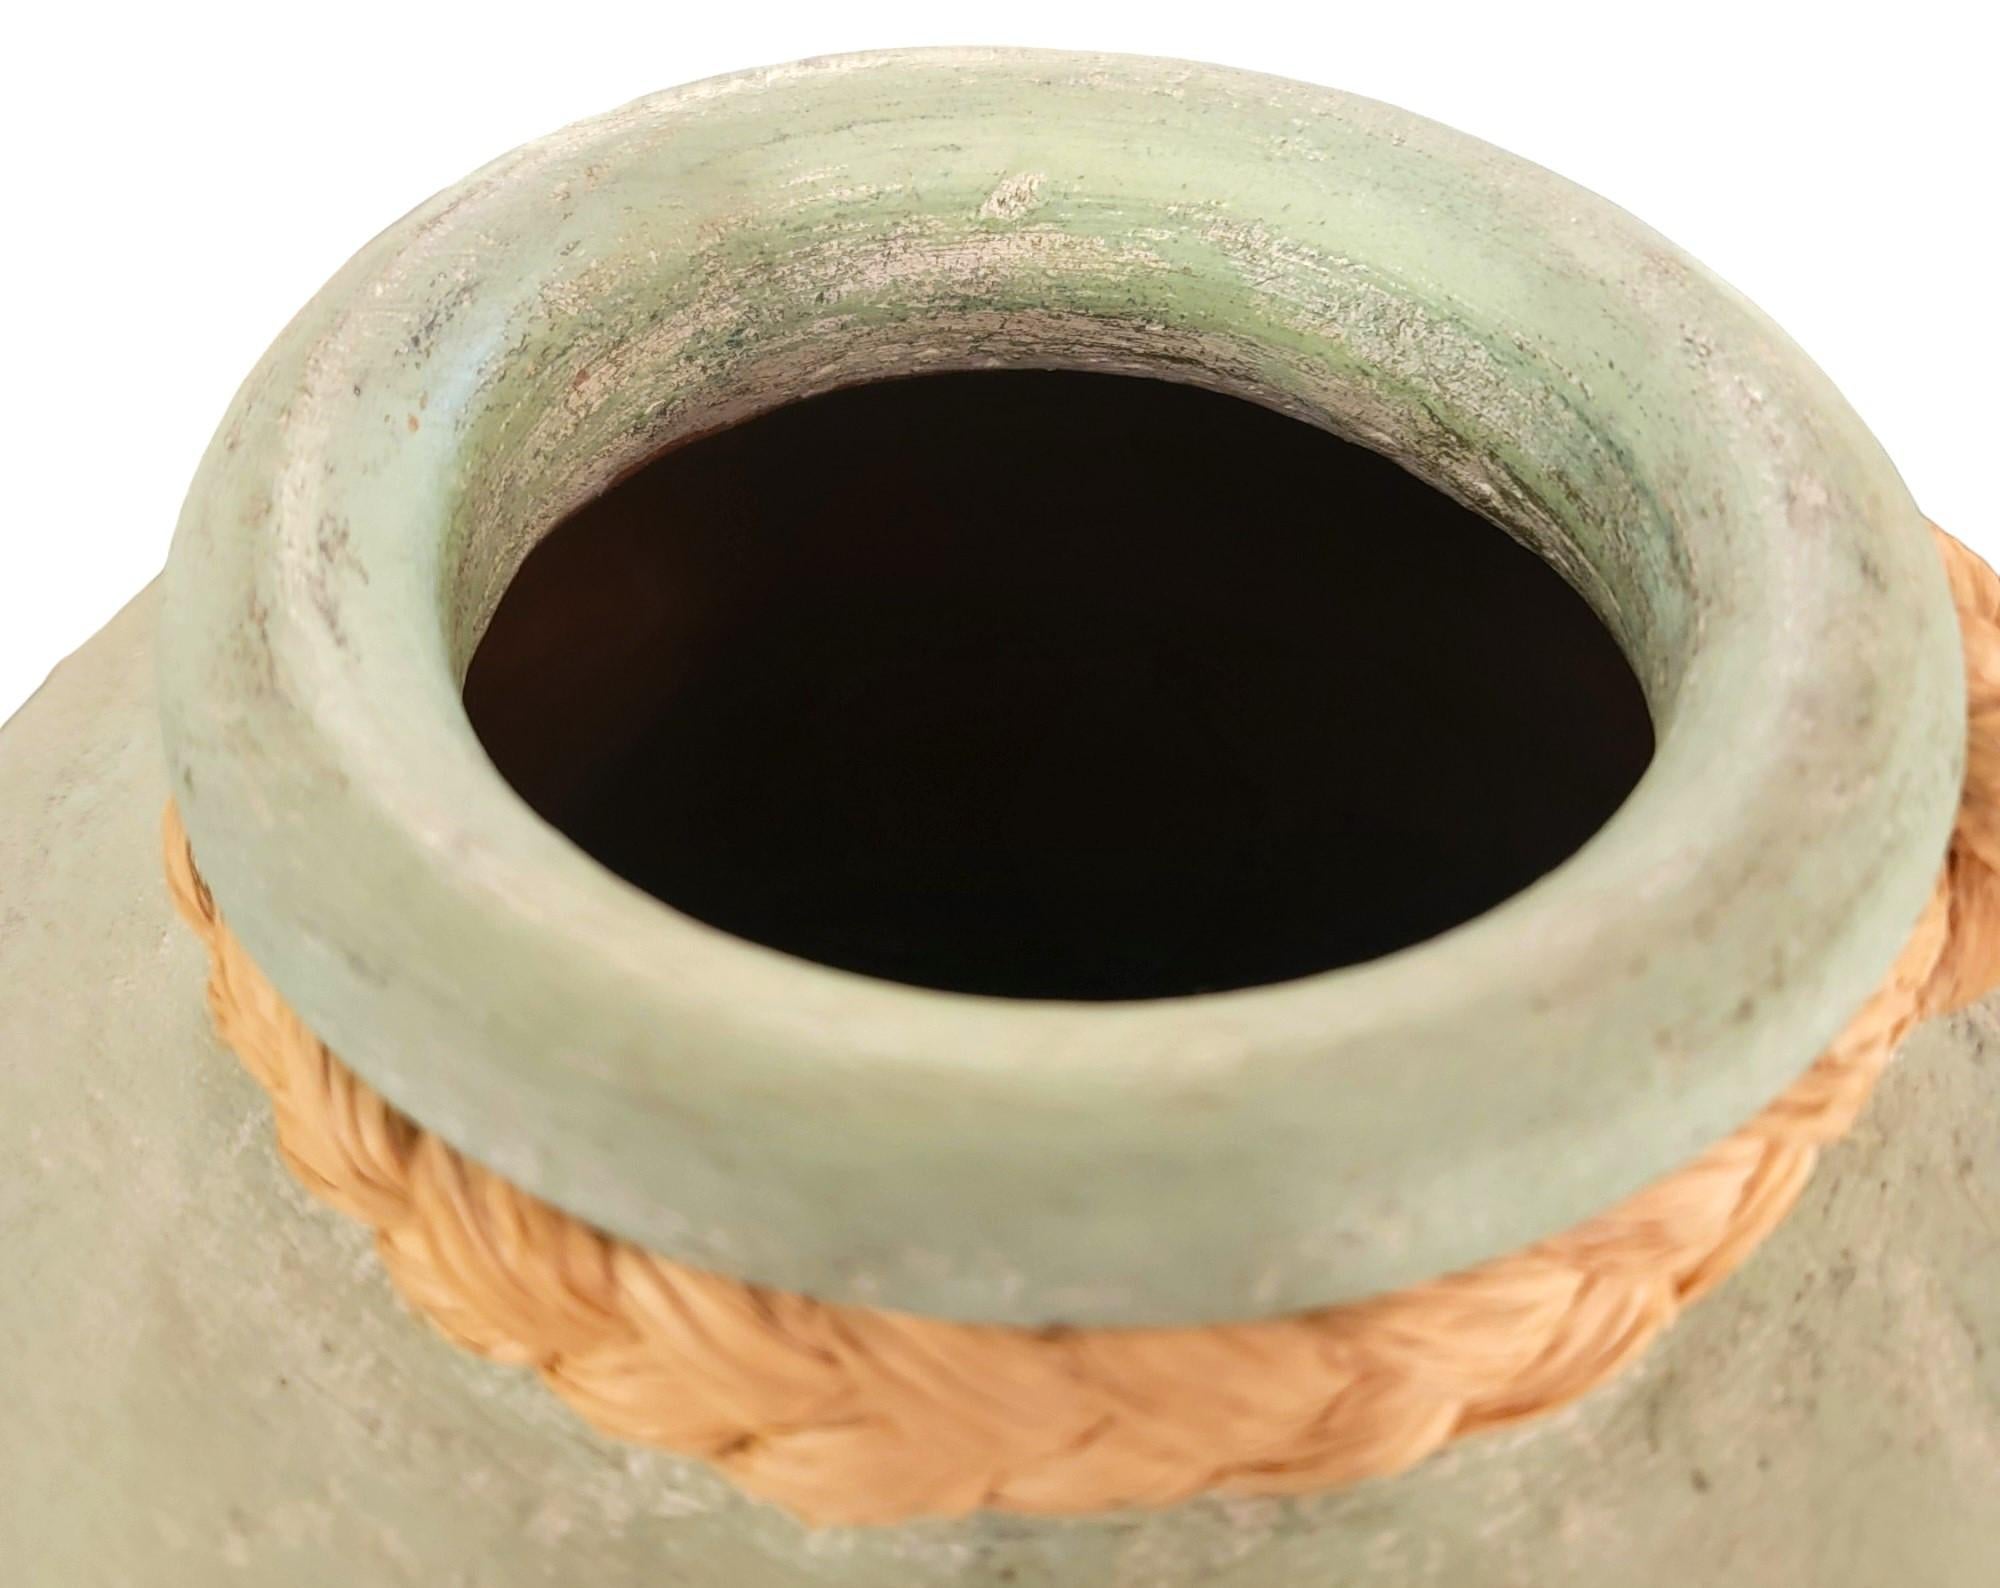 Vase peint par poudrage avec corde au sommet. Dimensions approximatives - 13 de diamètre x 21 de haut